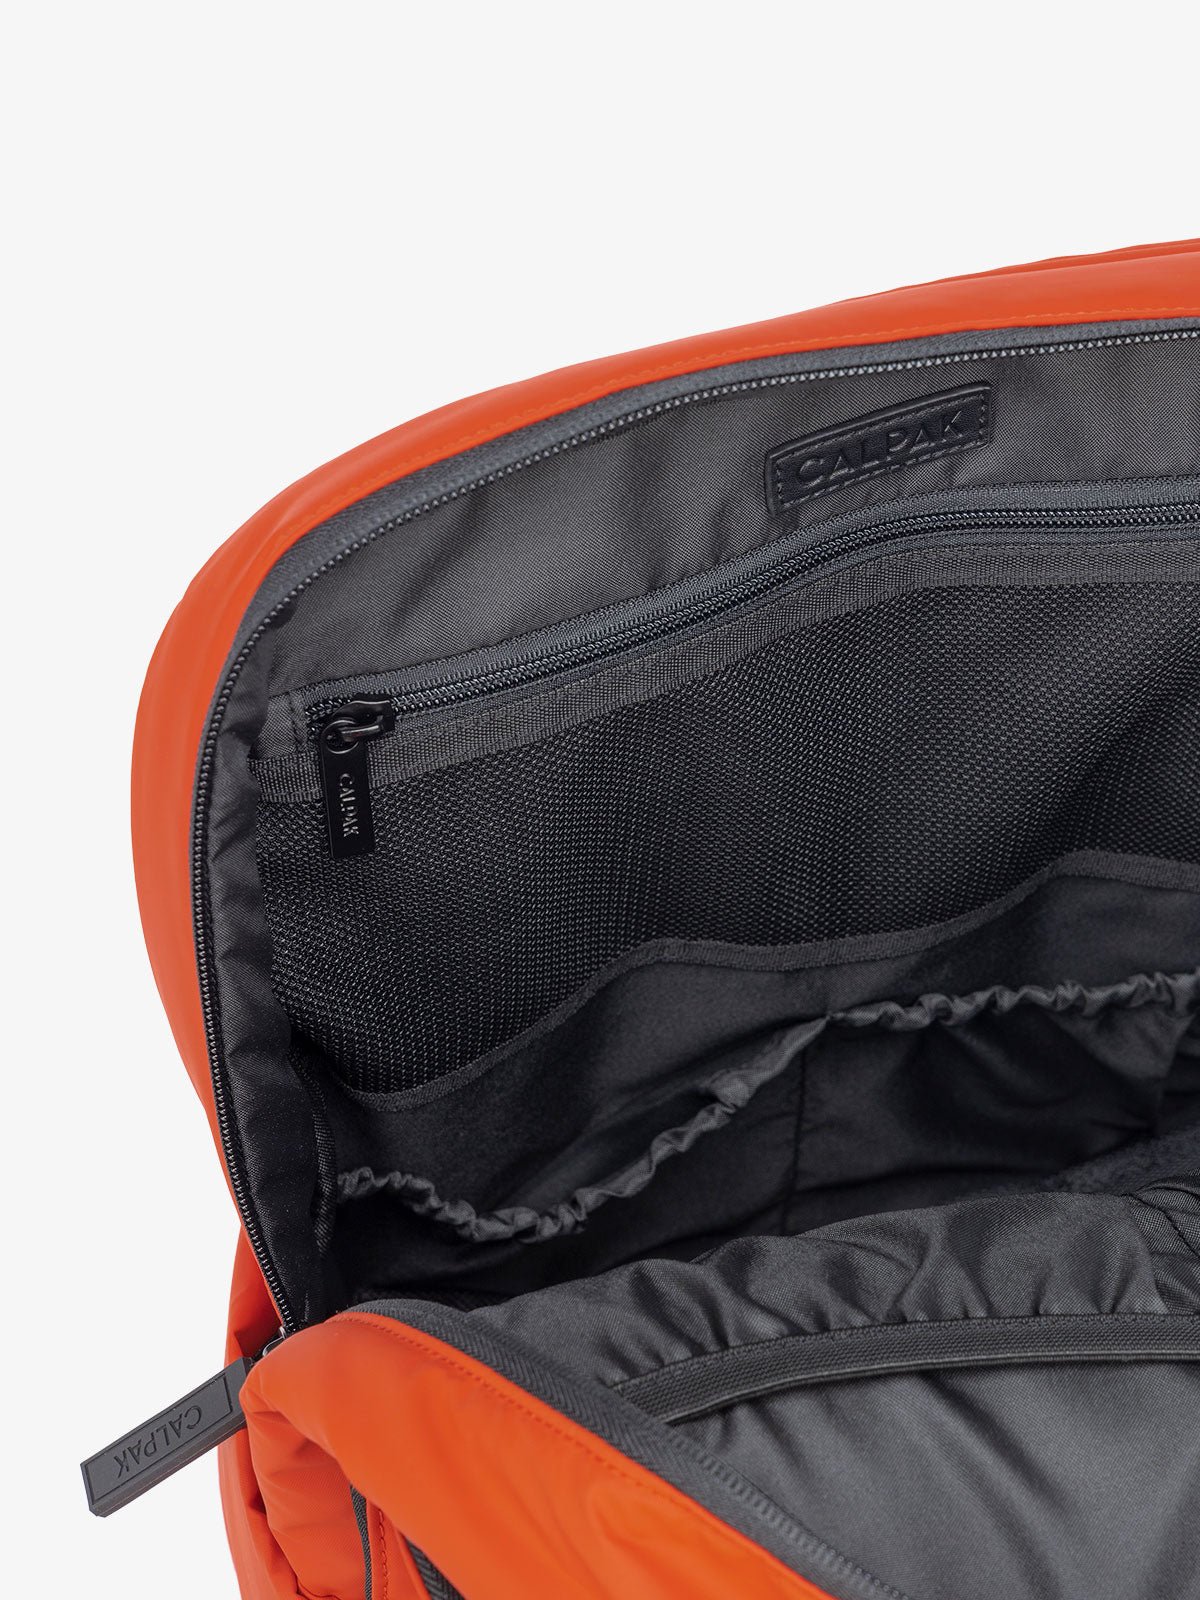 laptop sleeve of luggage backpack in red orange brick